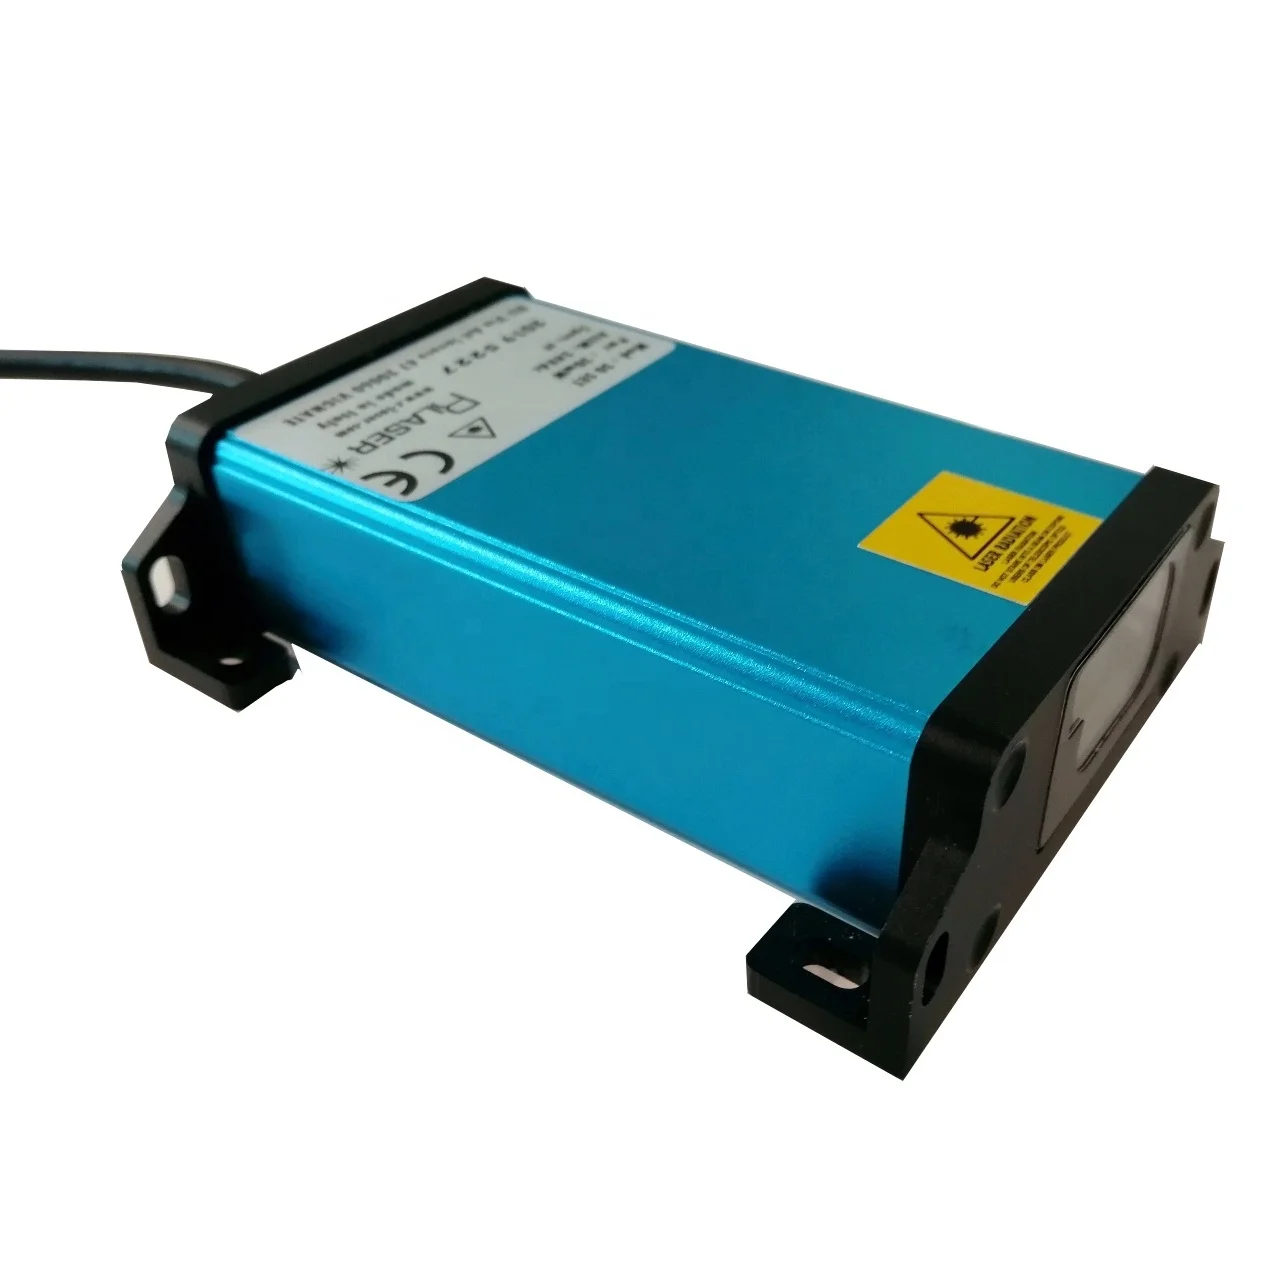 4-20mA output  200m  laser sensor  for shop docking